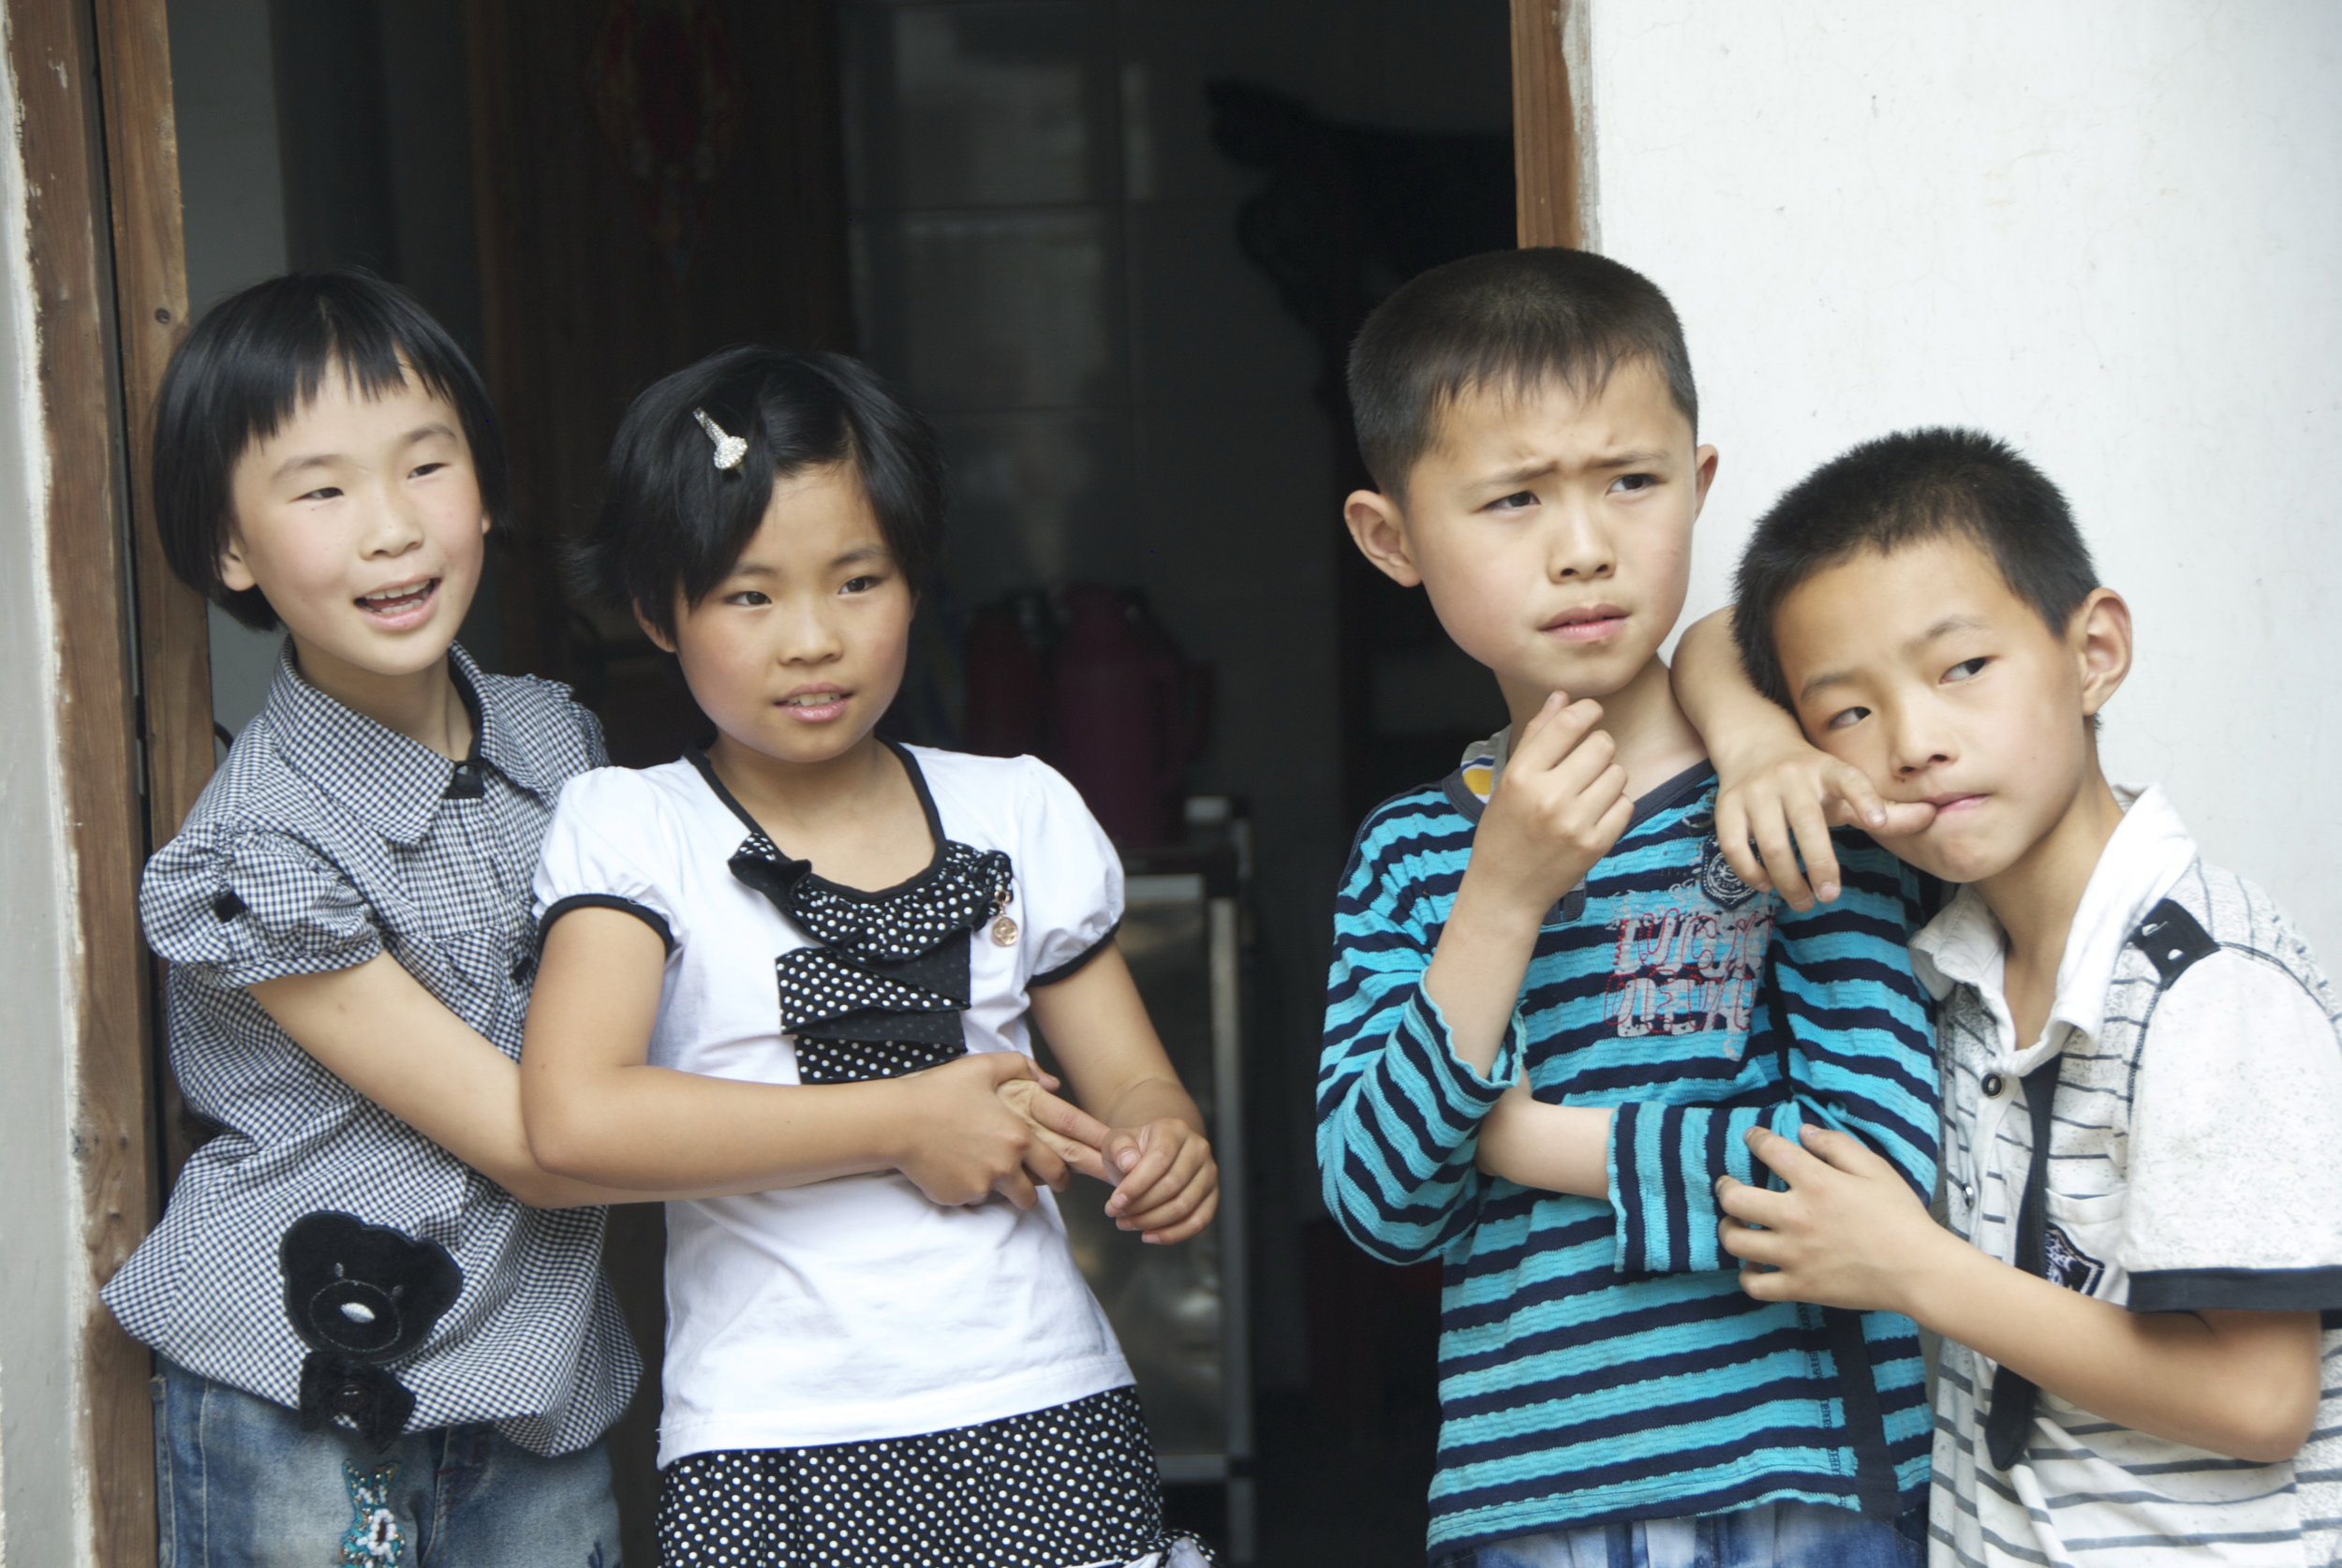 China kids doorway.jpg